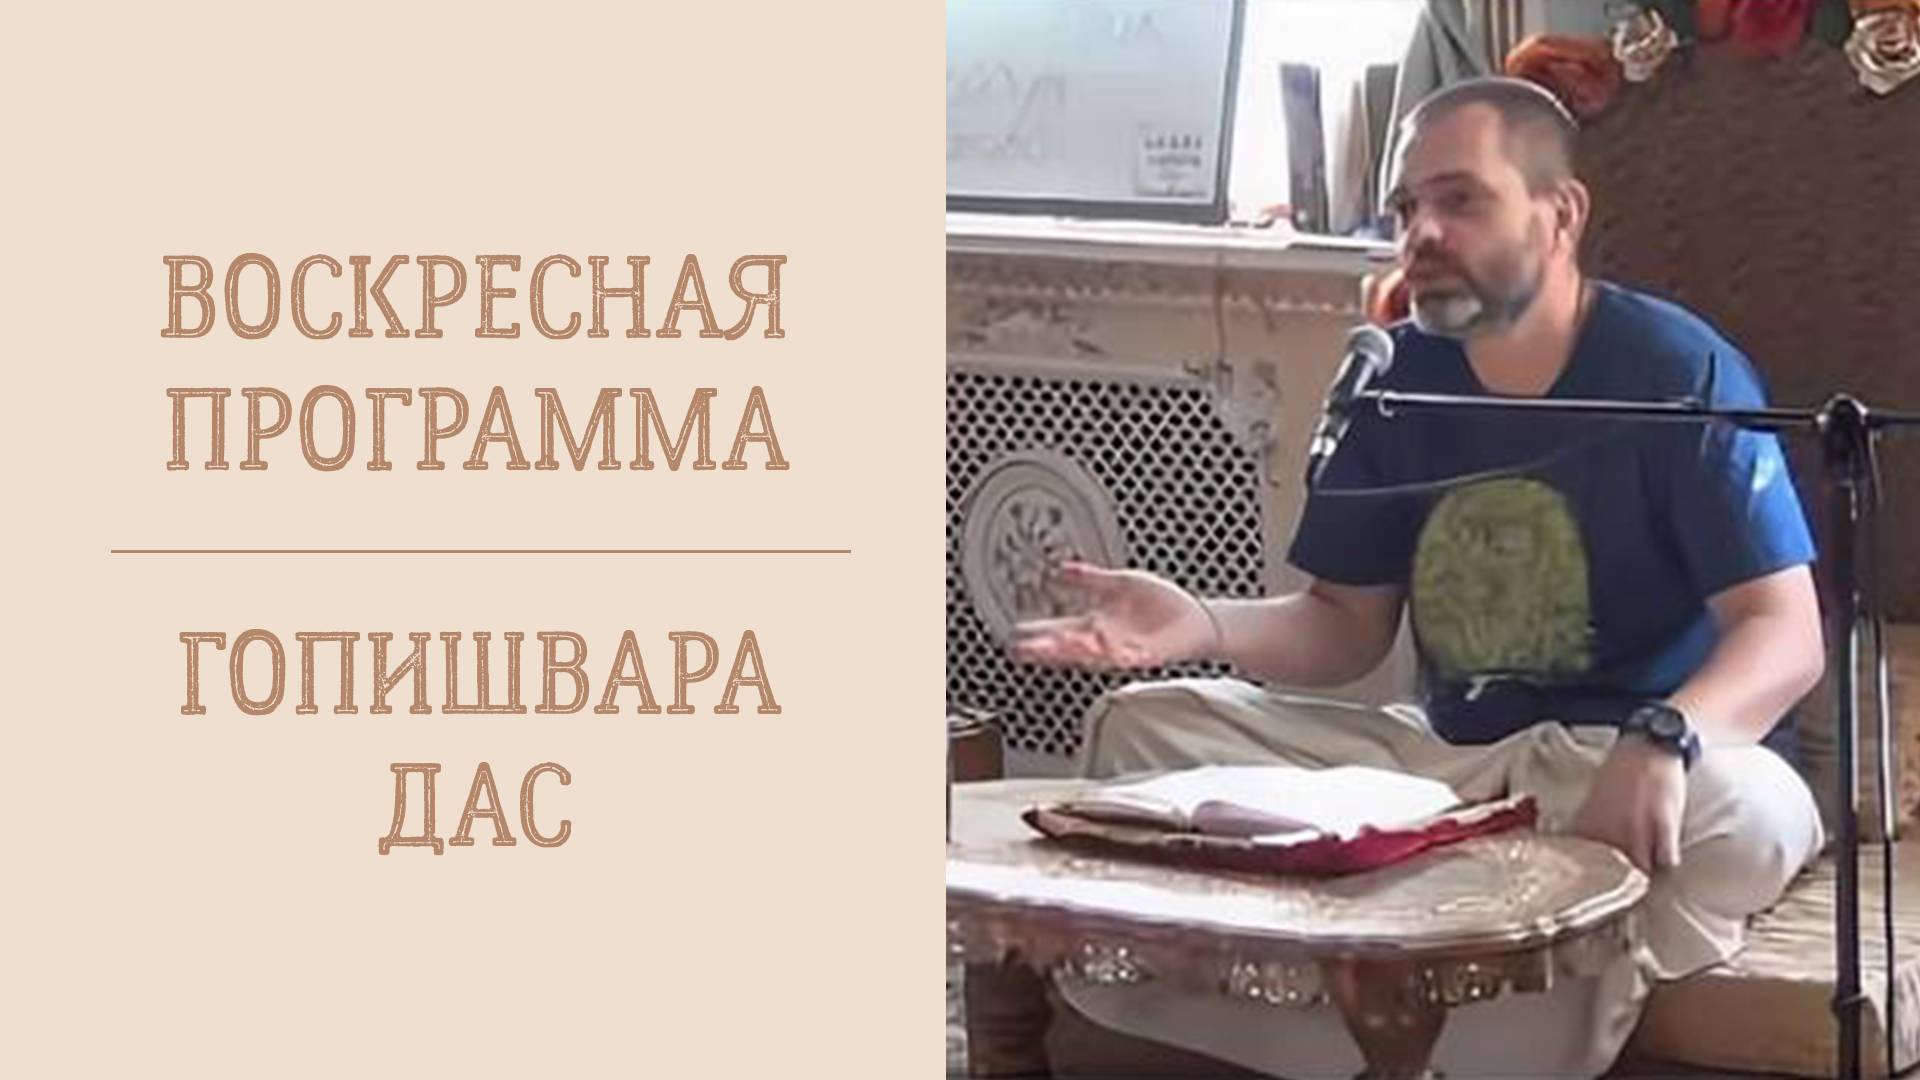 21.04.24 (14:00) Воскресная лекция - Е.М. Гопишвара дас